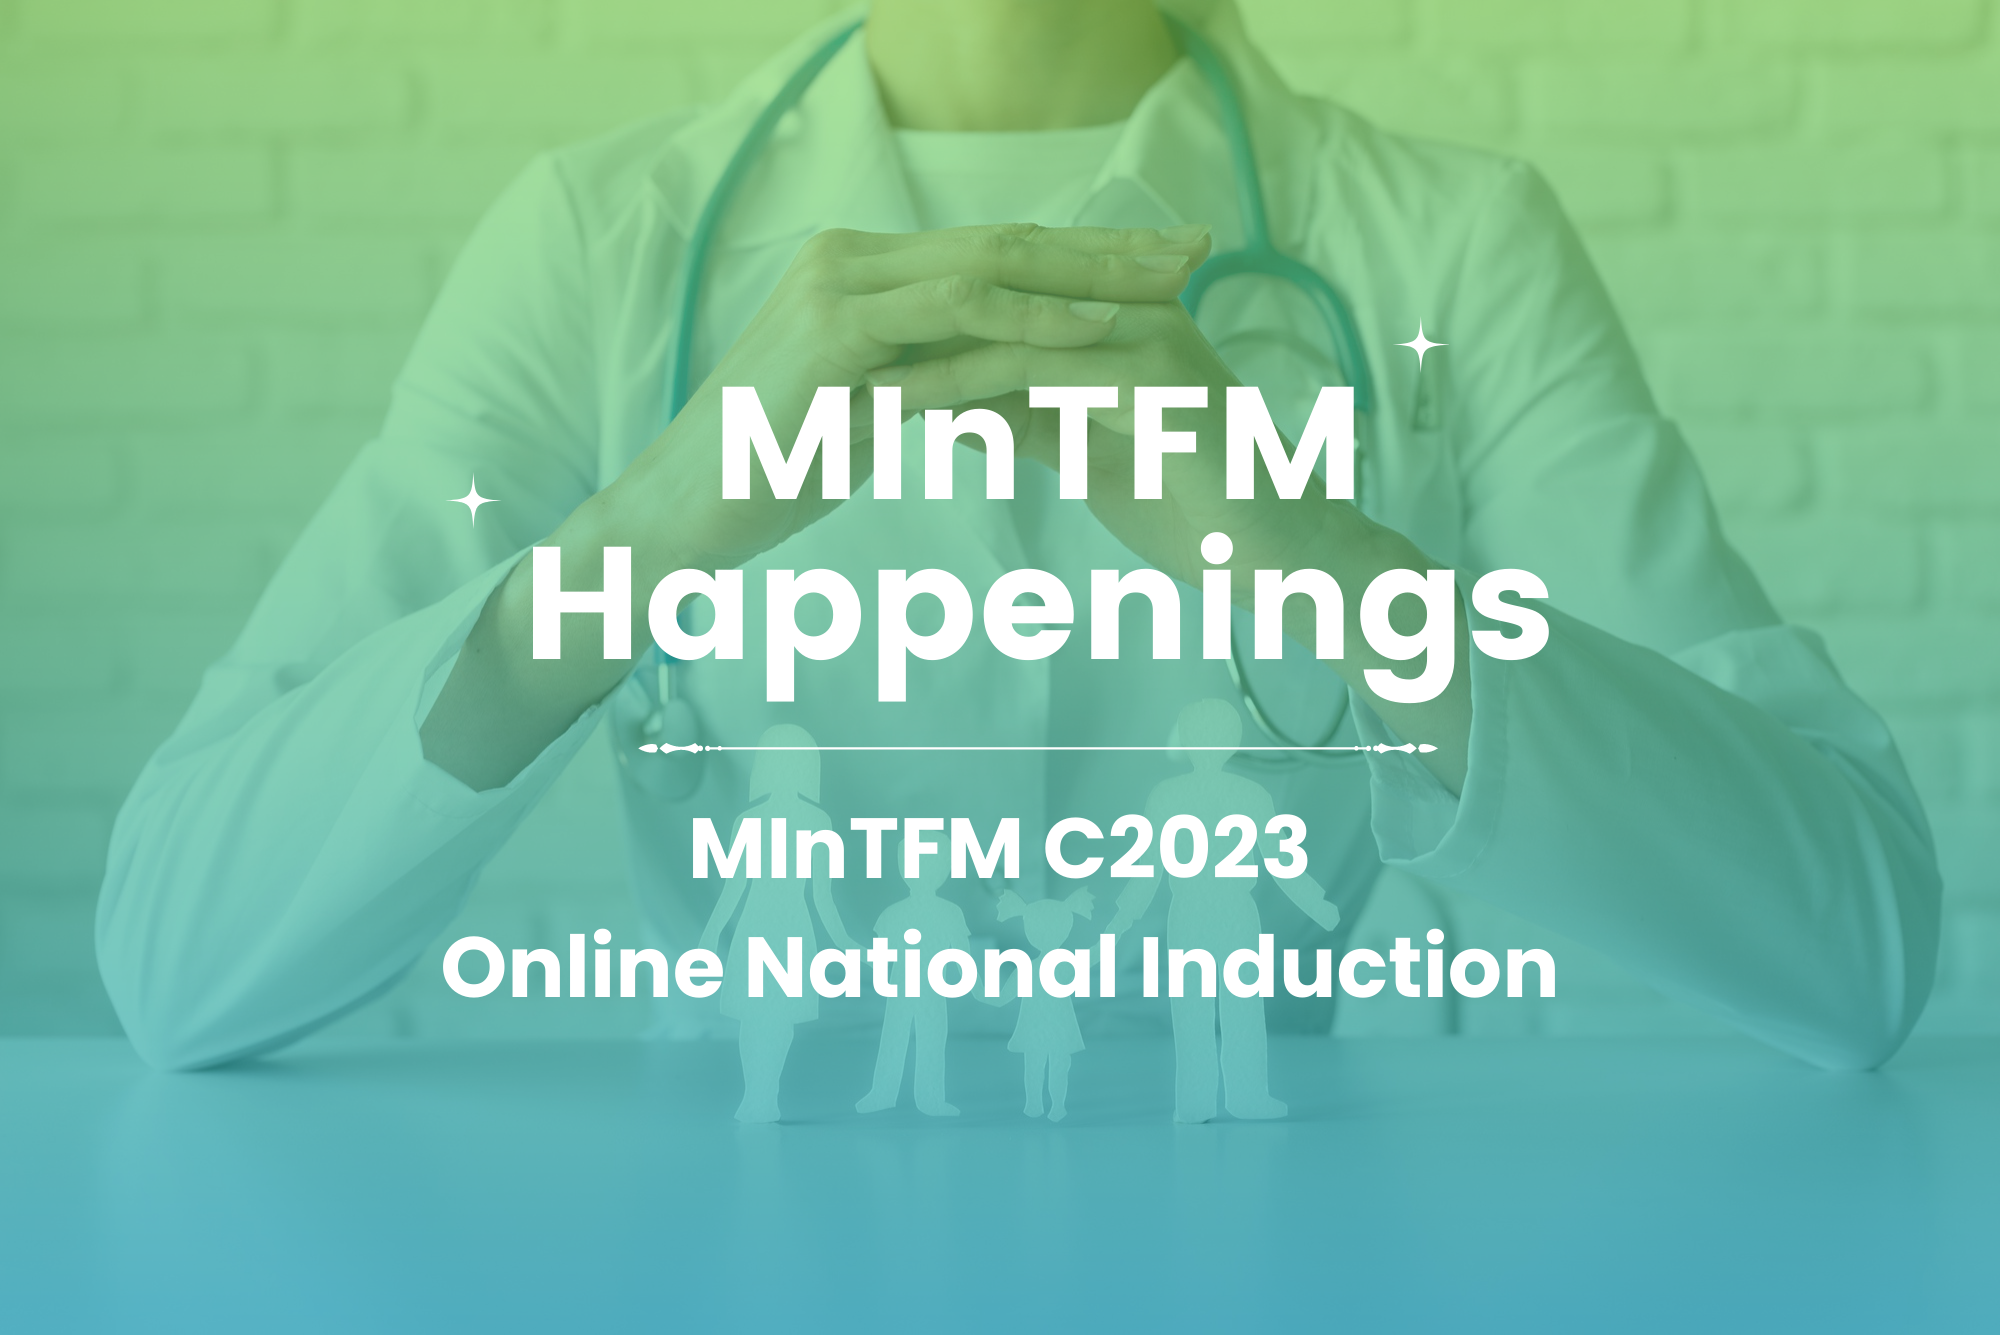 MInTFM C2023 Online National Induction blog image